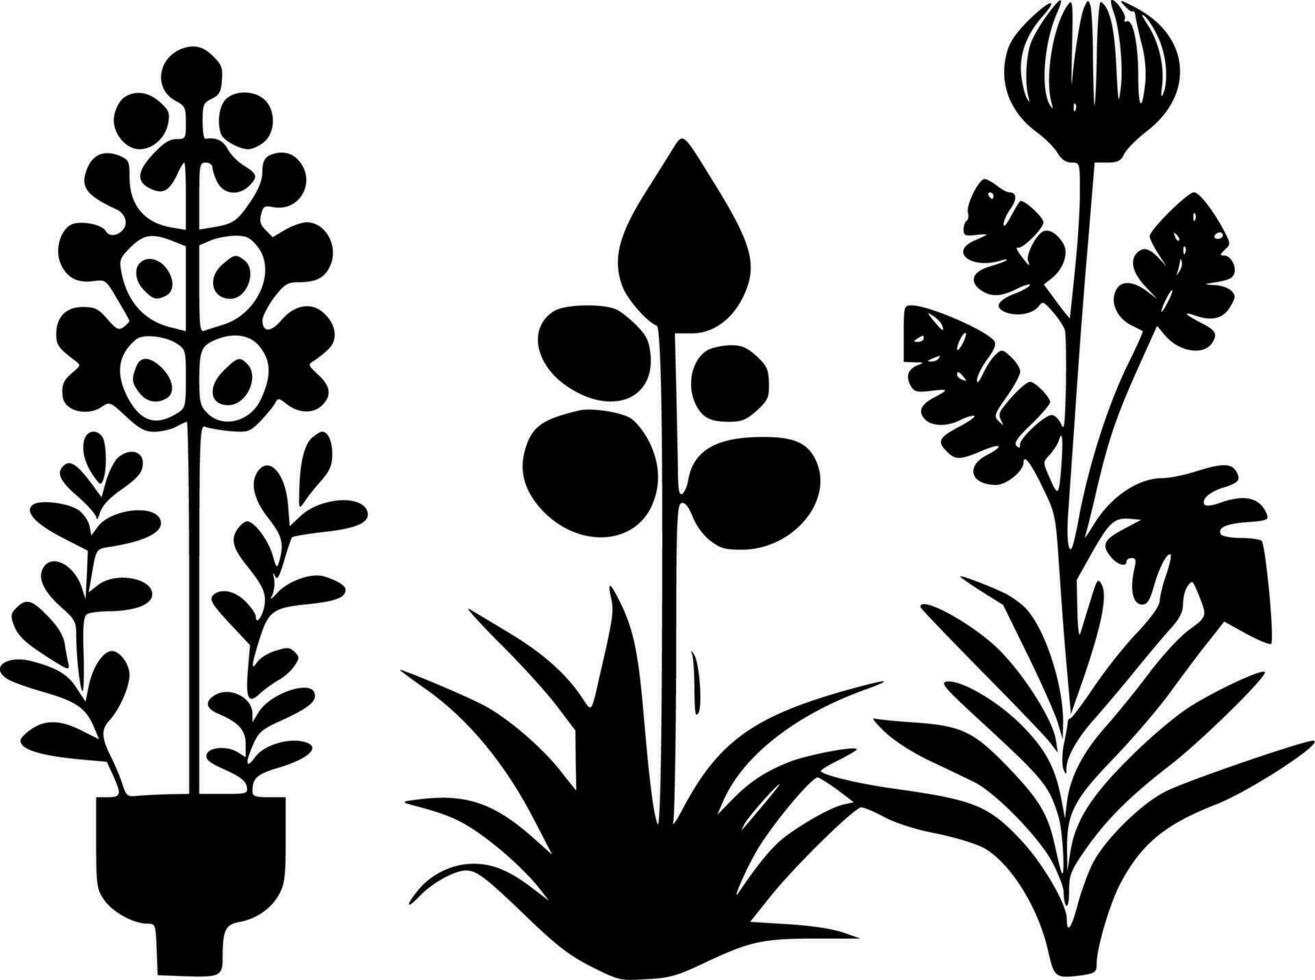 les plantes - haute qualité vecteur logo - vecteur illustration idéal pour T-shirt graphique